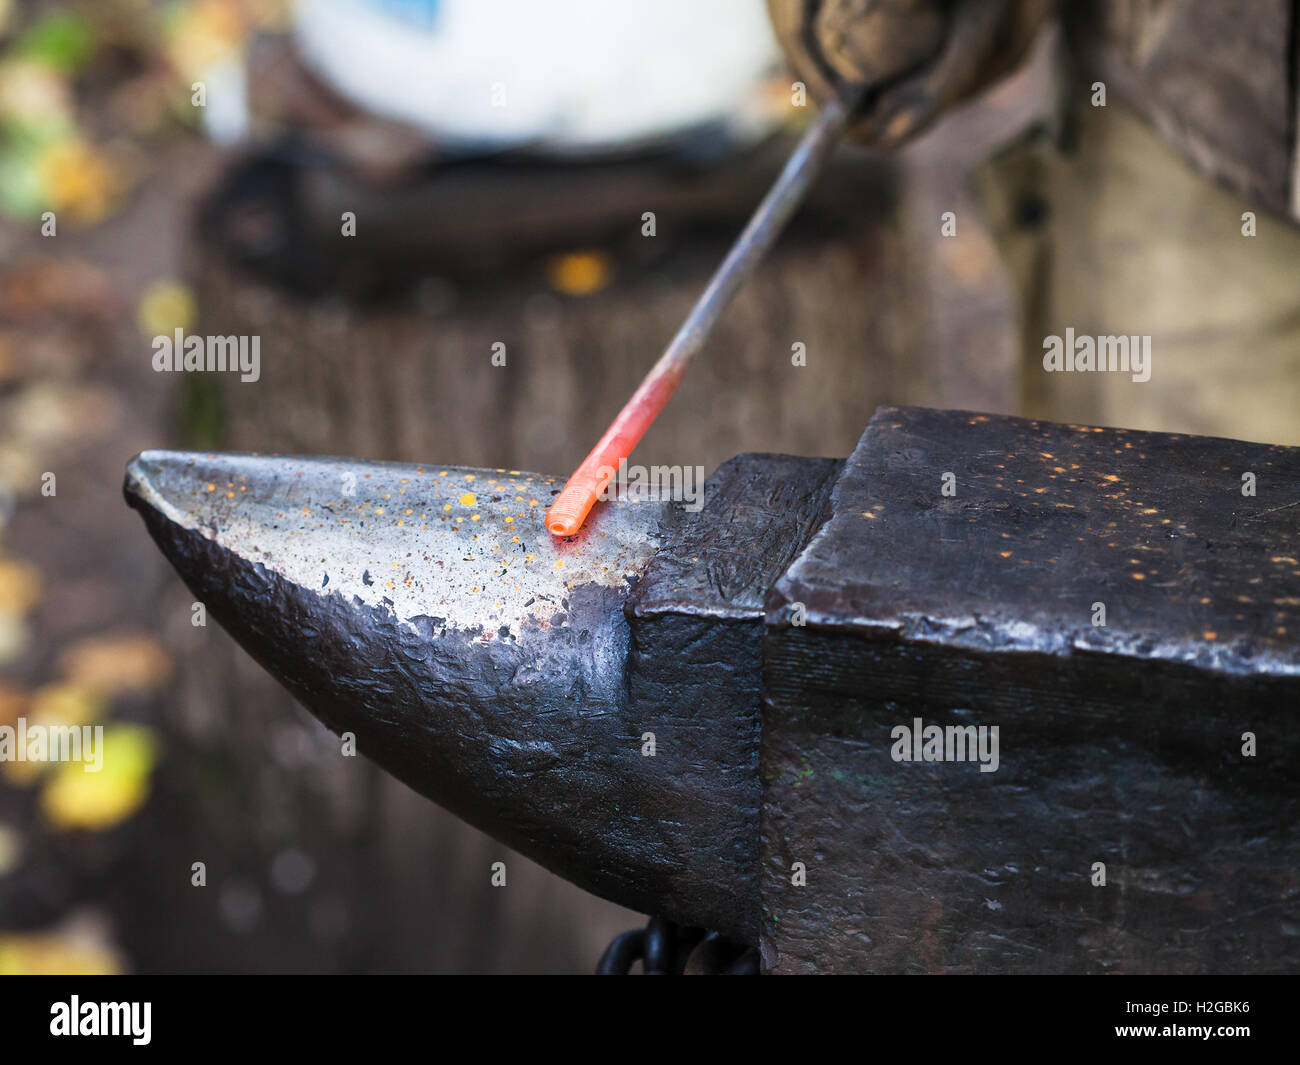 Red Hot tondino di ferro sull'incudine in outdoor fucina rurale Foto Stock